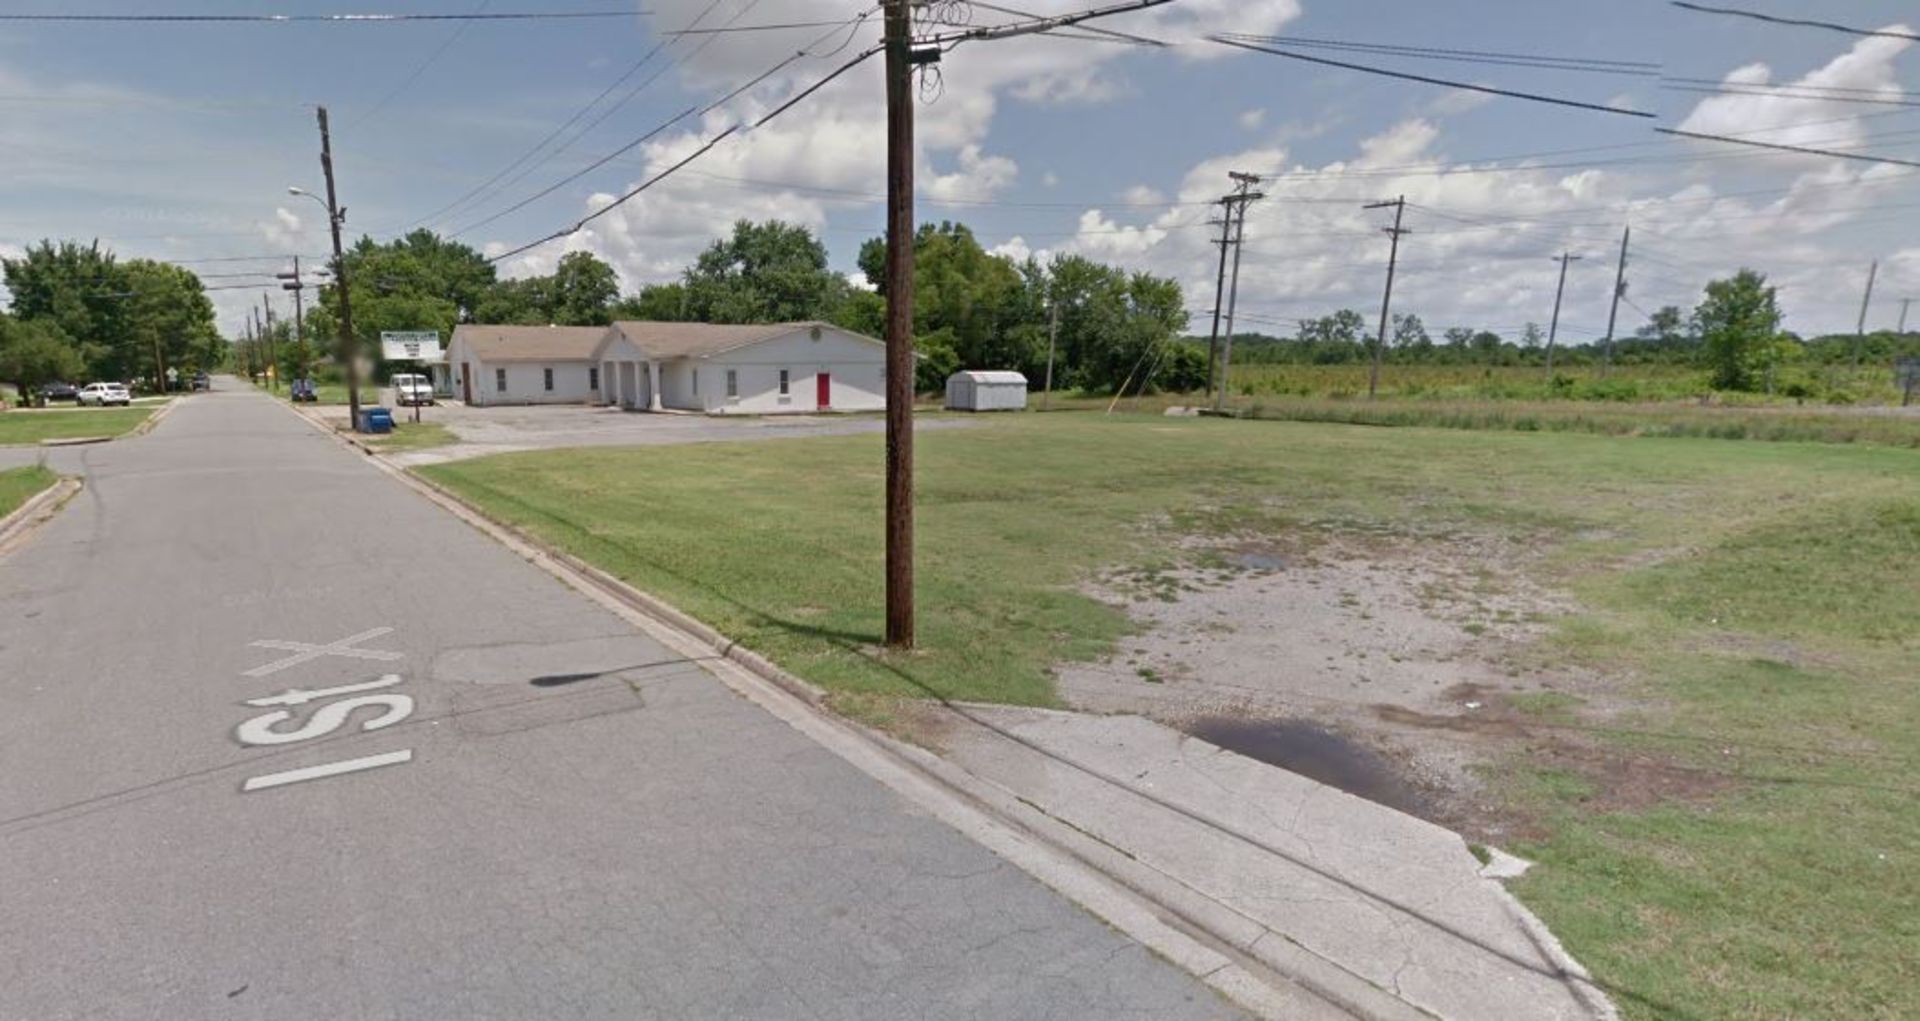 7,840 Sq Ft Residential Plot in Little Rock, Arkansas, USA - Image 2 of 11